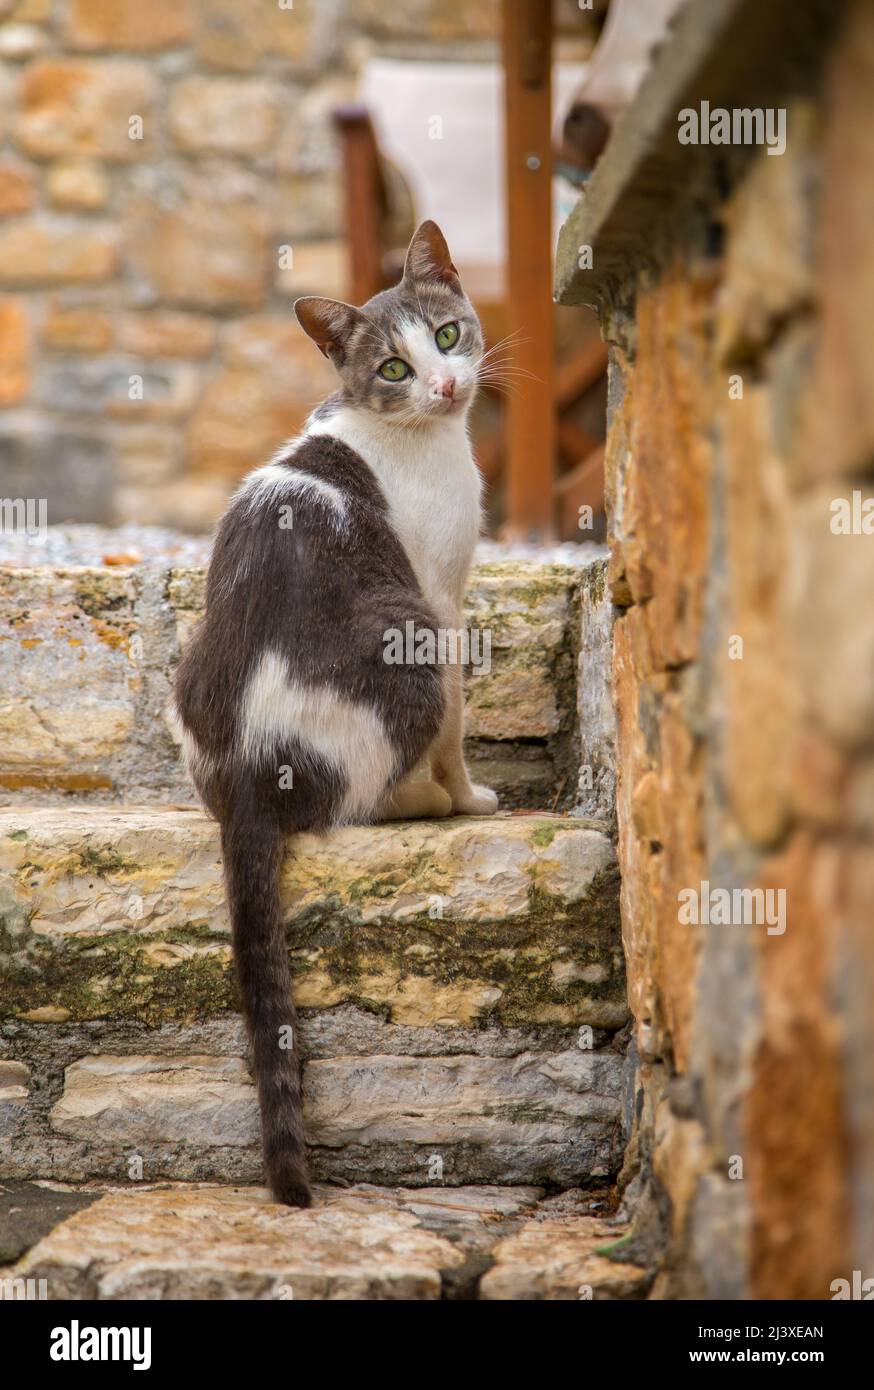 Chat sympathique sur les marches d'une maison sur l'île grecque d'Alonnisos Banque D'Images